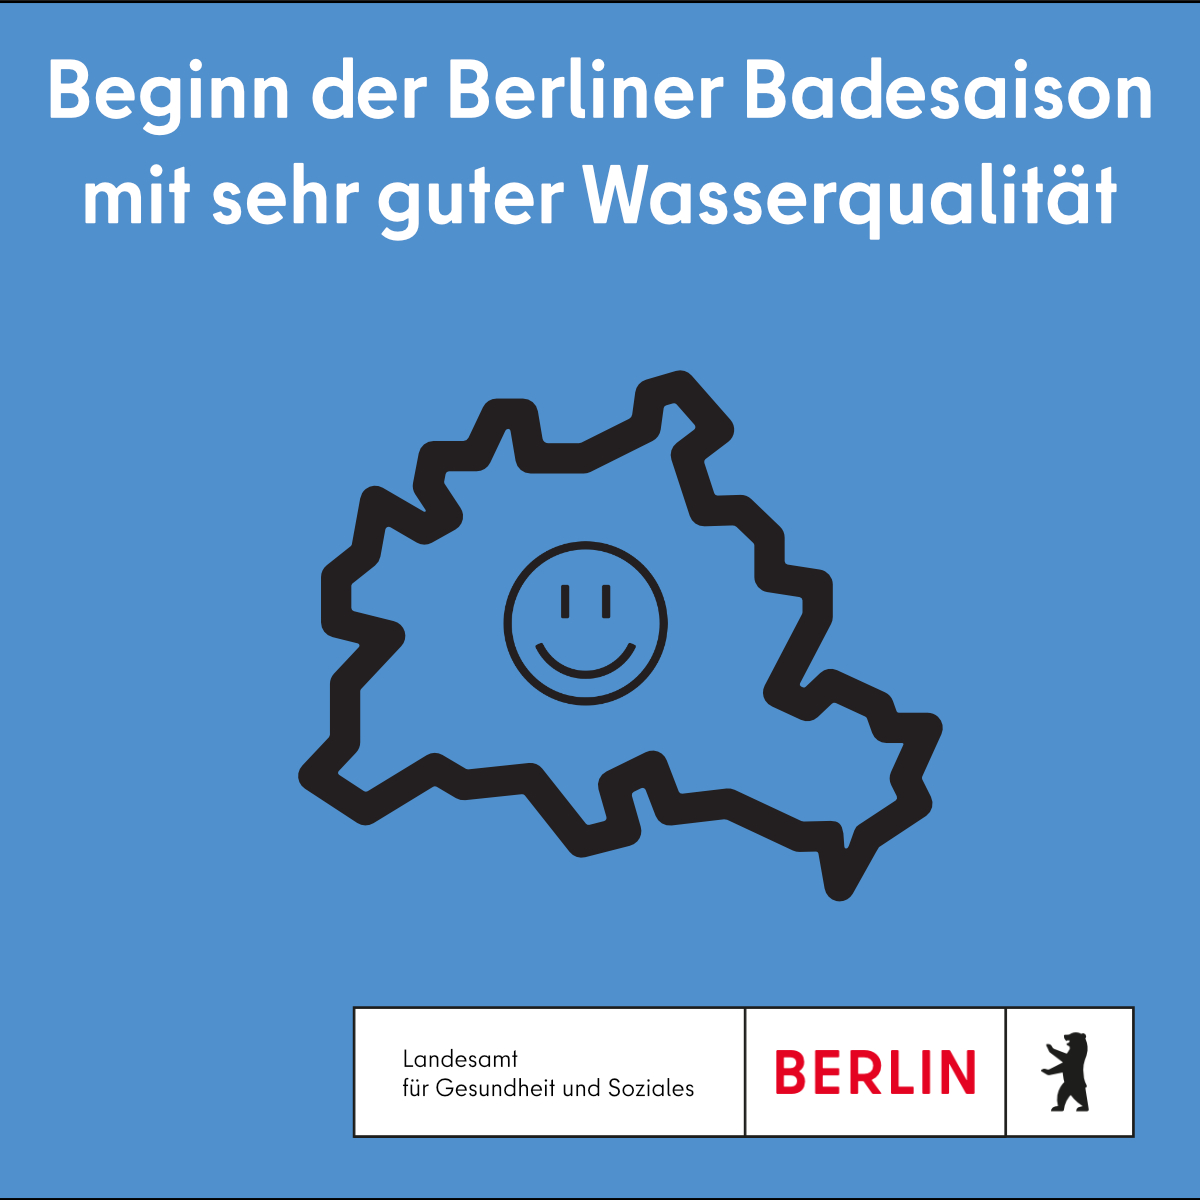 🏊‍♀️ Heute startet die offizielle #Badesaison! Auf Grundlage der ersten Untersuchungsergebnisse konnten alle #Berliner #Badegewässer als zum Baden geeignet eingestuft werden. Dem Anbaden bei bestem Frühlingswetter steht derzeit also nichts im Wege. ➡️berlin.de/lageso/service…